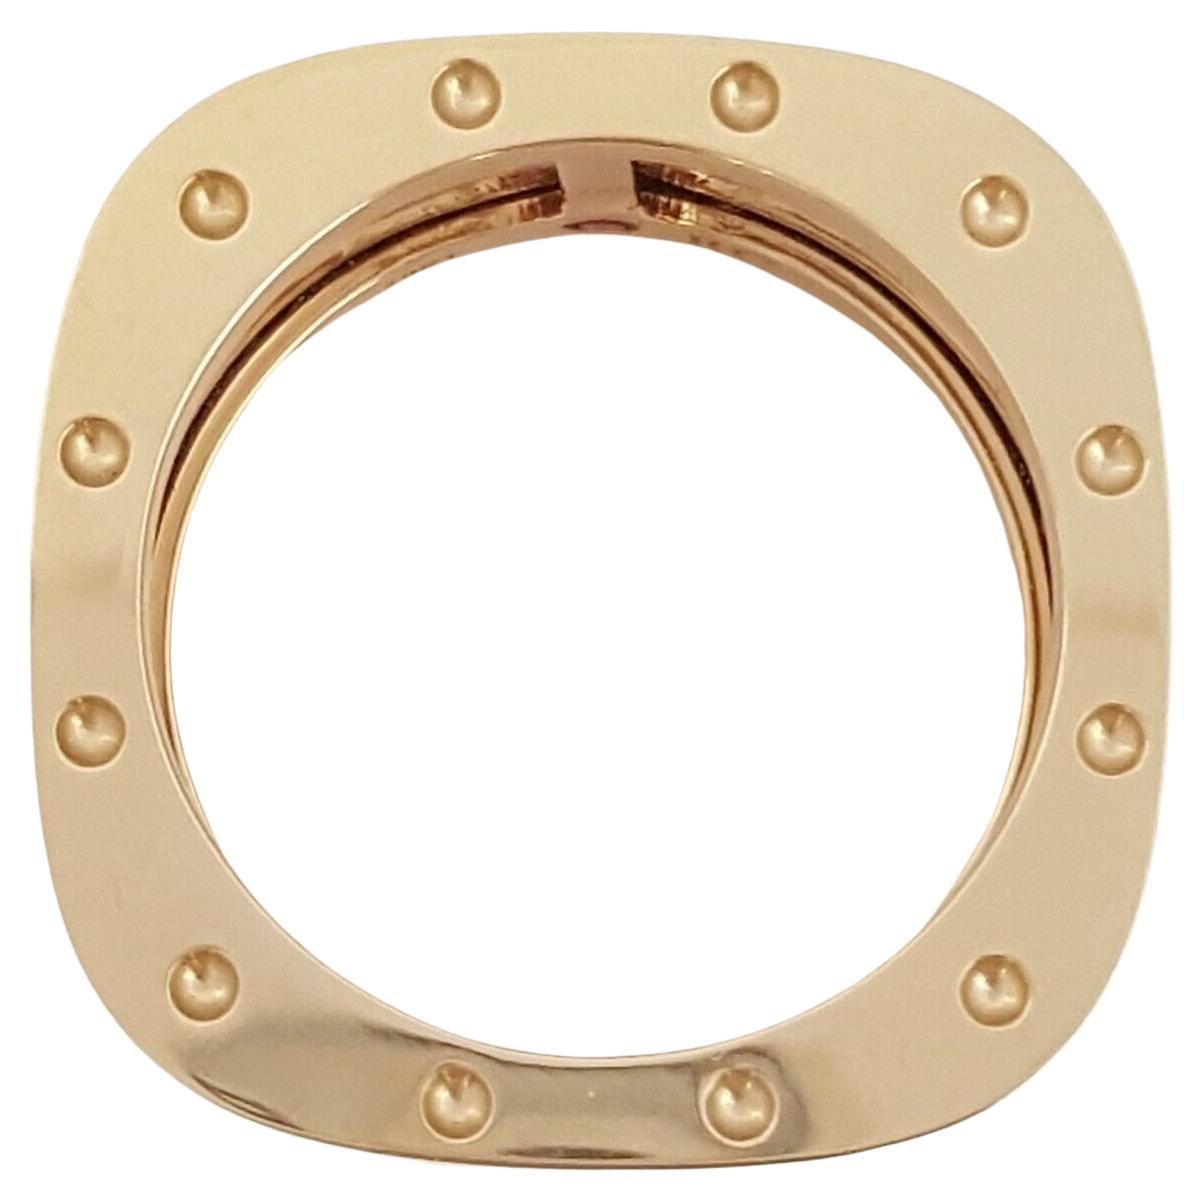 Roberto Coin 18K Gelbgold Pois Moi Double Row Statement Ring / Band.



Der Ring wiegt 11,4 Gramm, bei einer Breite von 10,8 mm und einer Dicke von 2,5 mm.